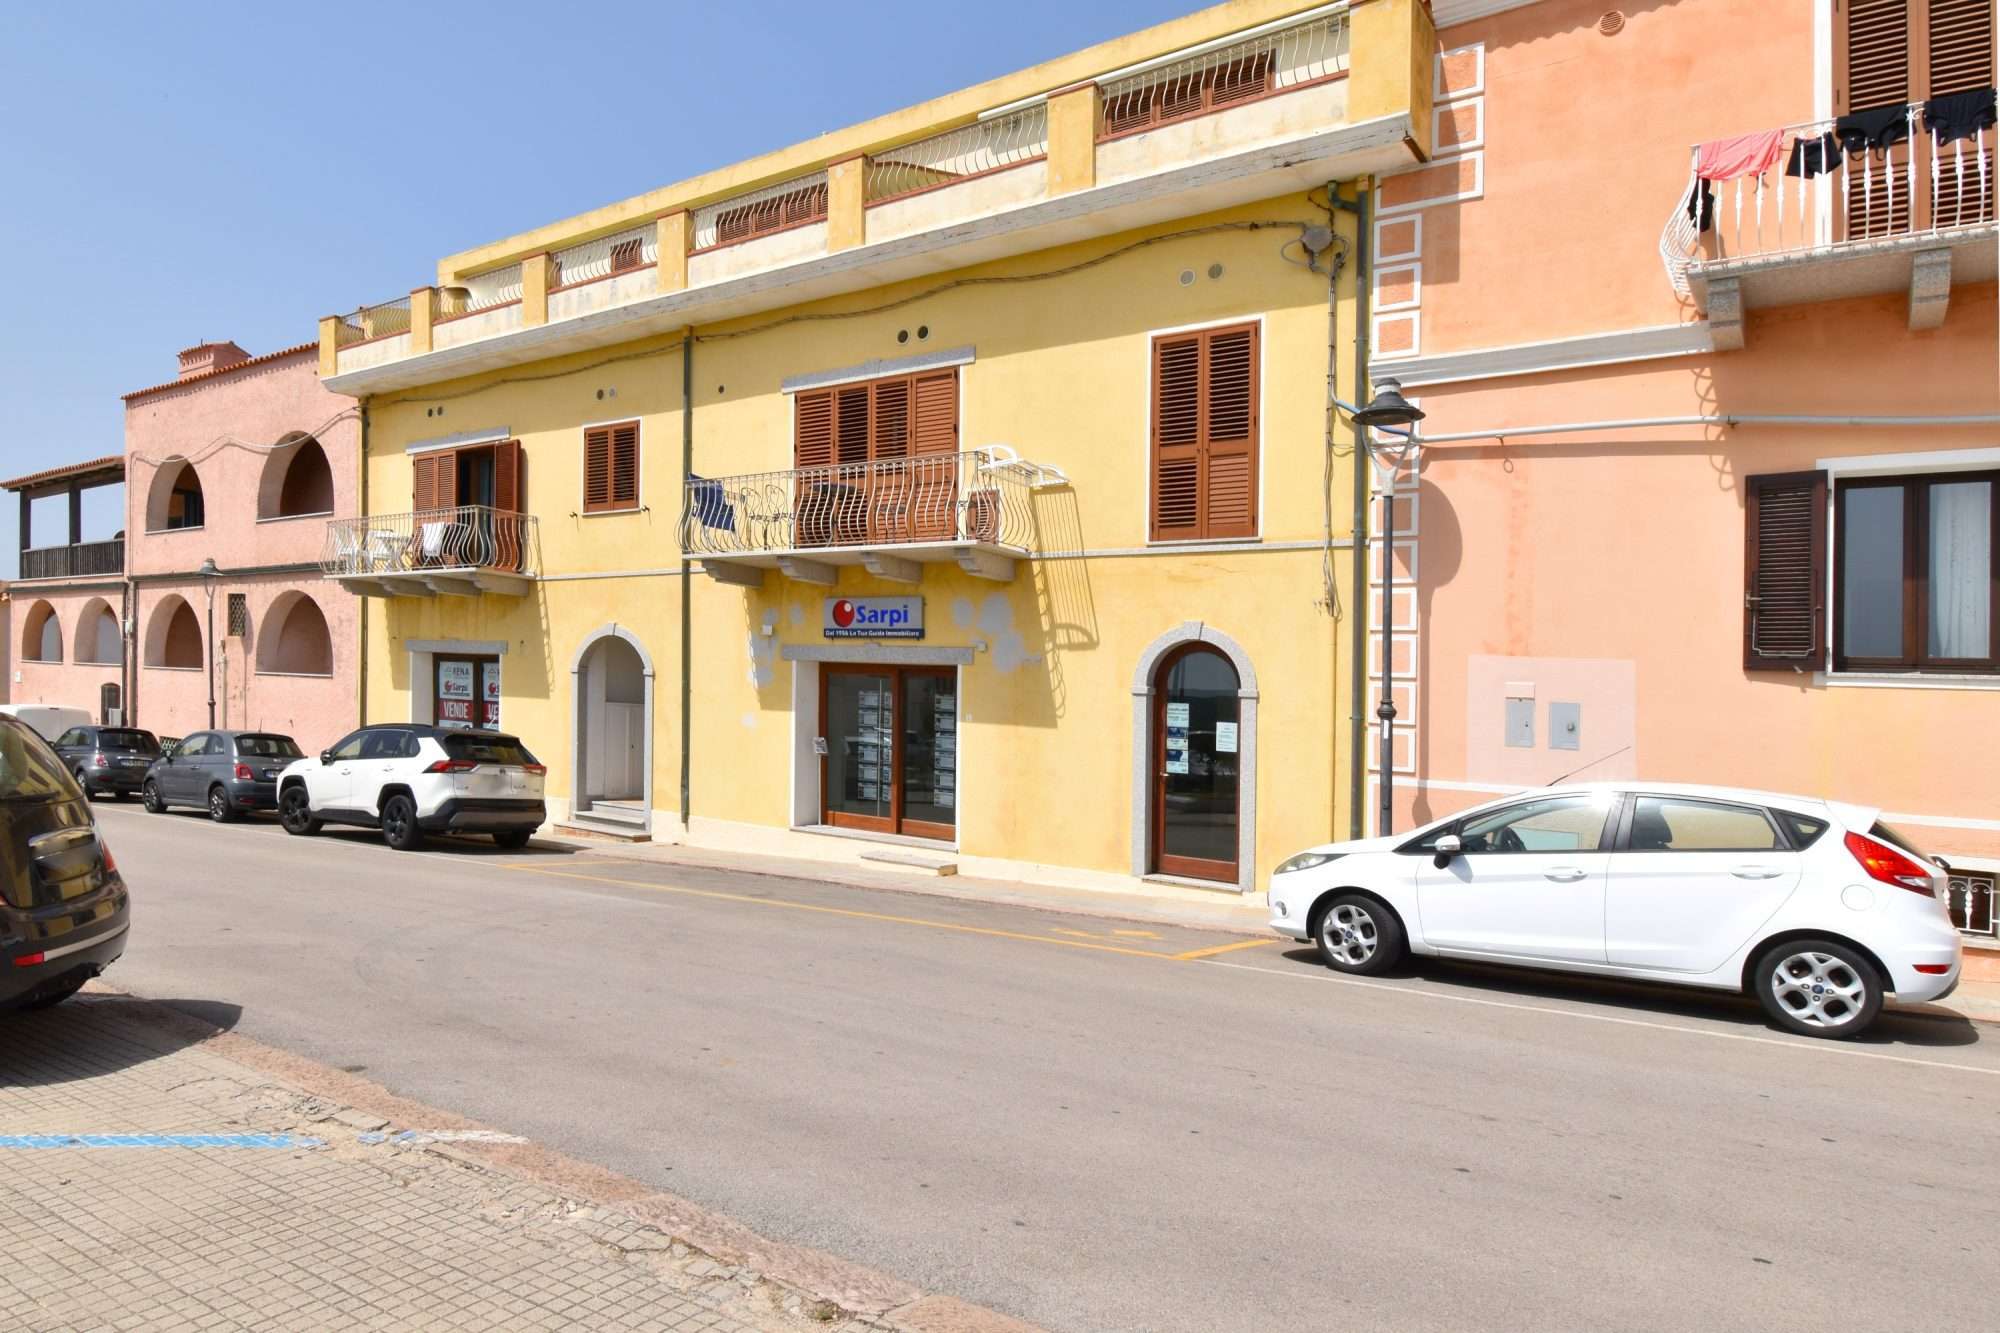 Locale commerciale in centro – Santa Teresa Gallura